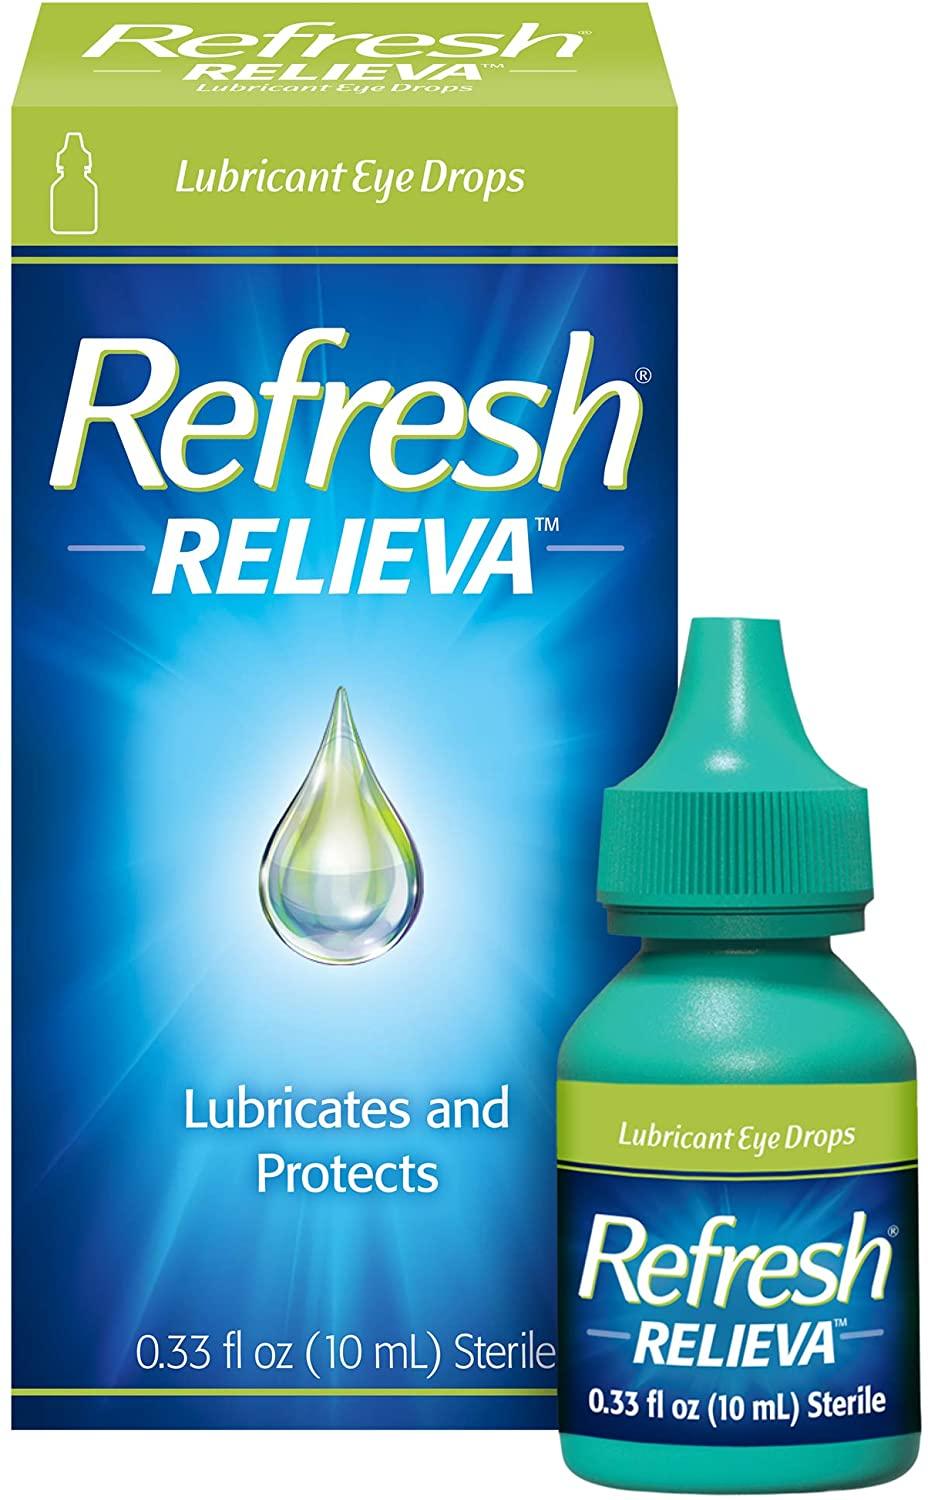 Refresh Relieva 10 ml - mondialpharma.com